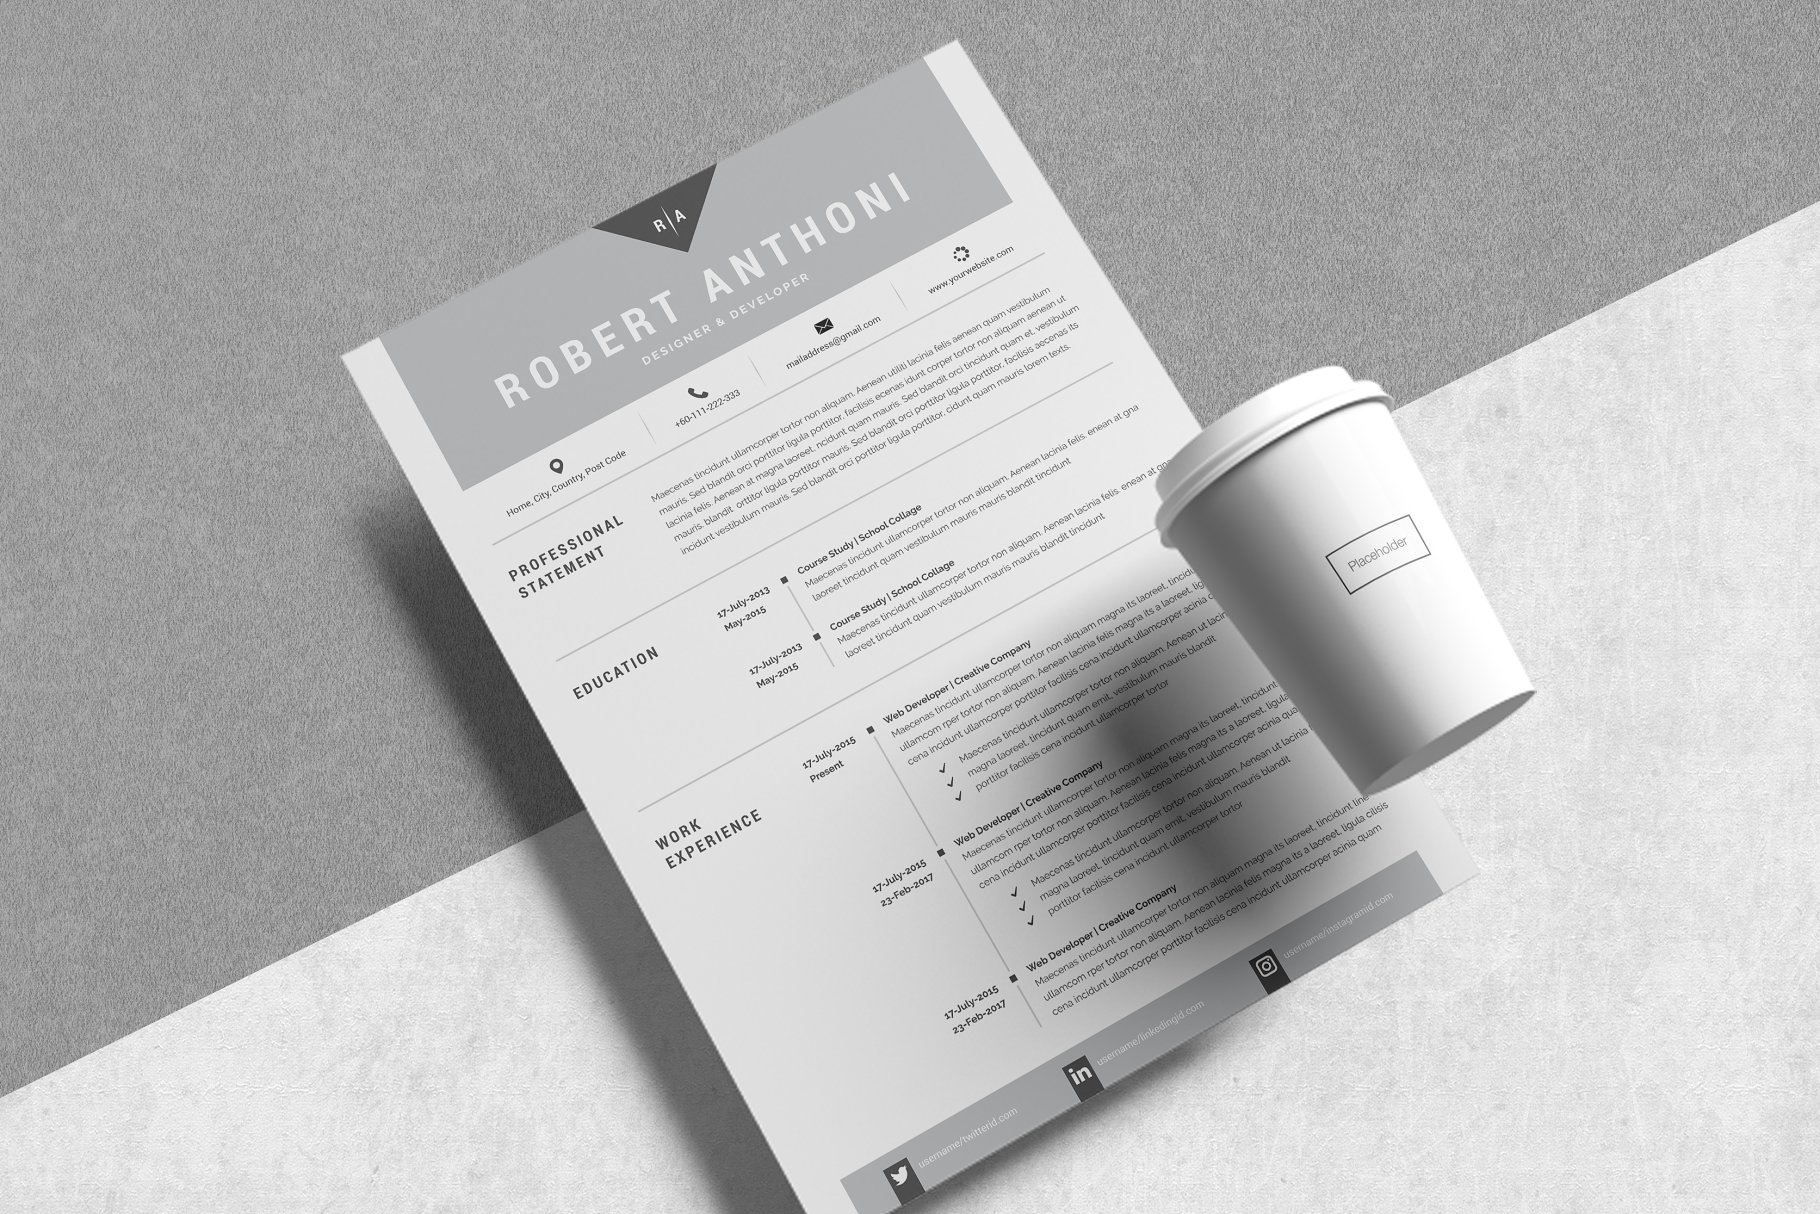 极简主义创意电子简历模板 4 Pages Creative Resume Pack插图